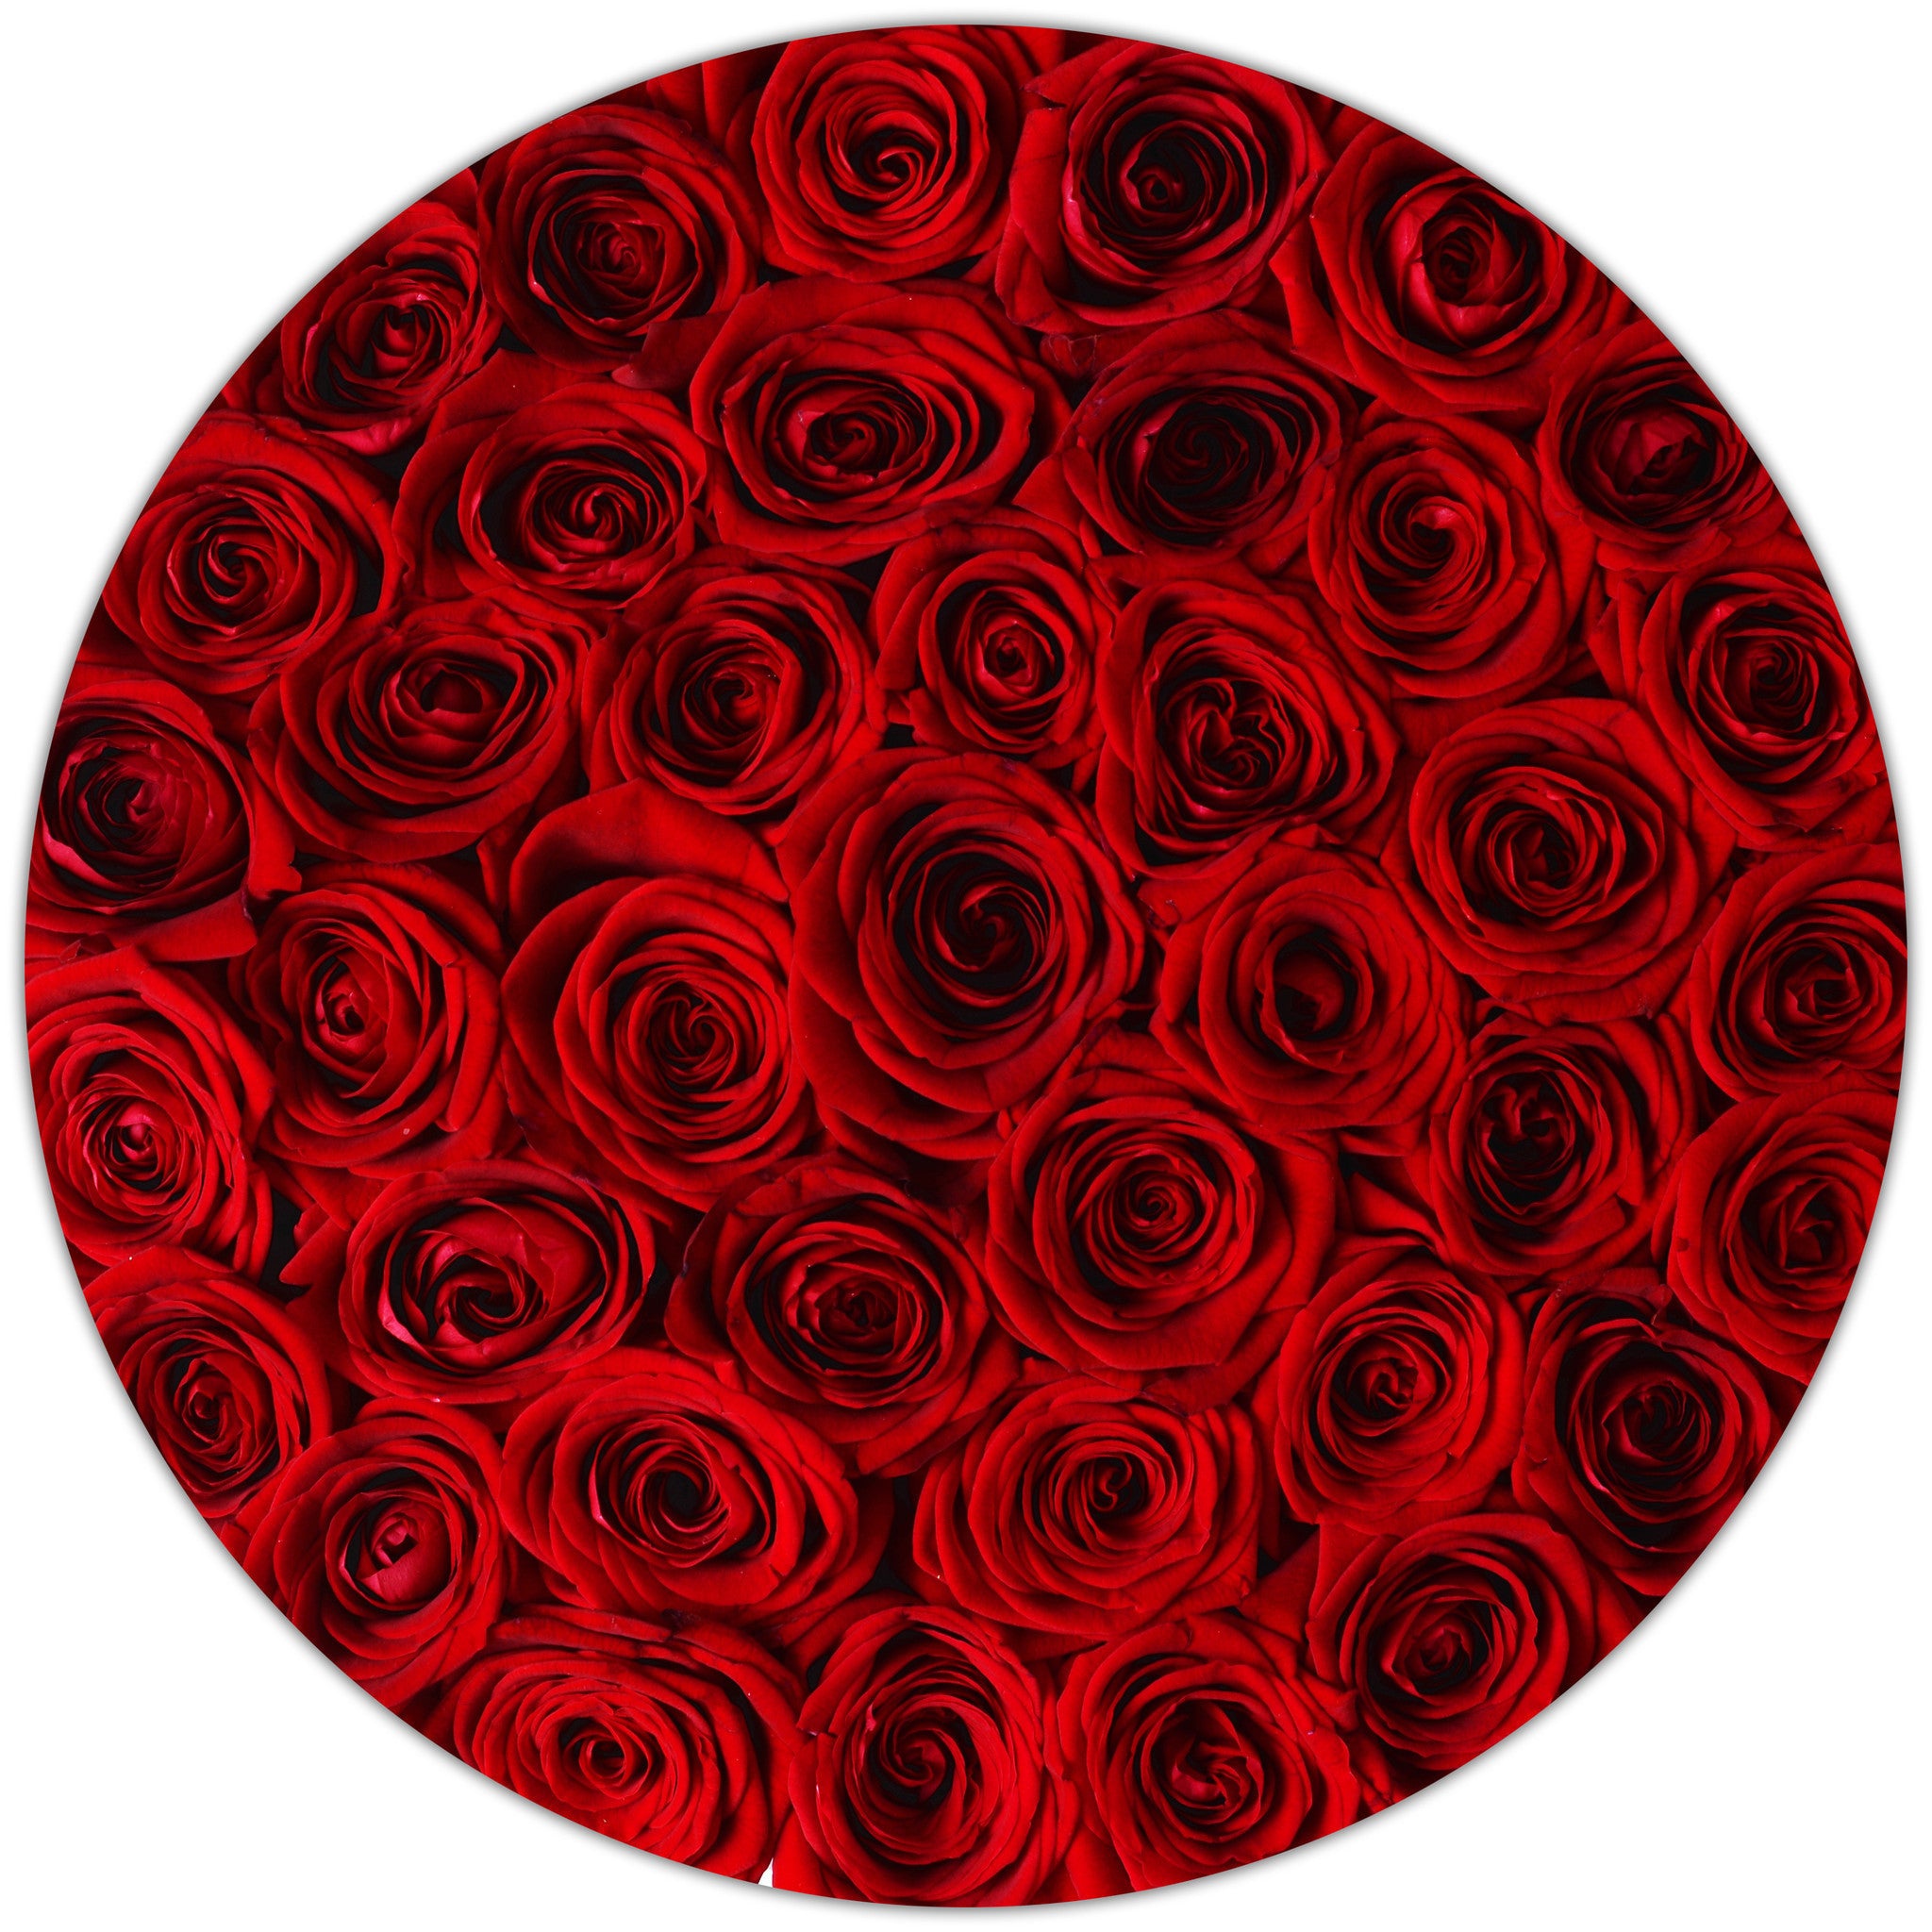 Medium - Red Roses - White Box - The Million Roses Budapest